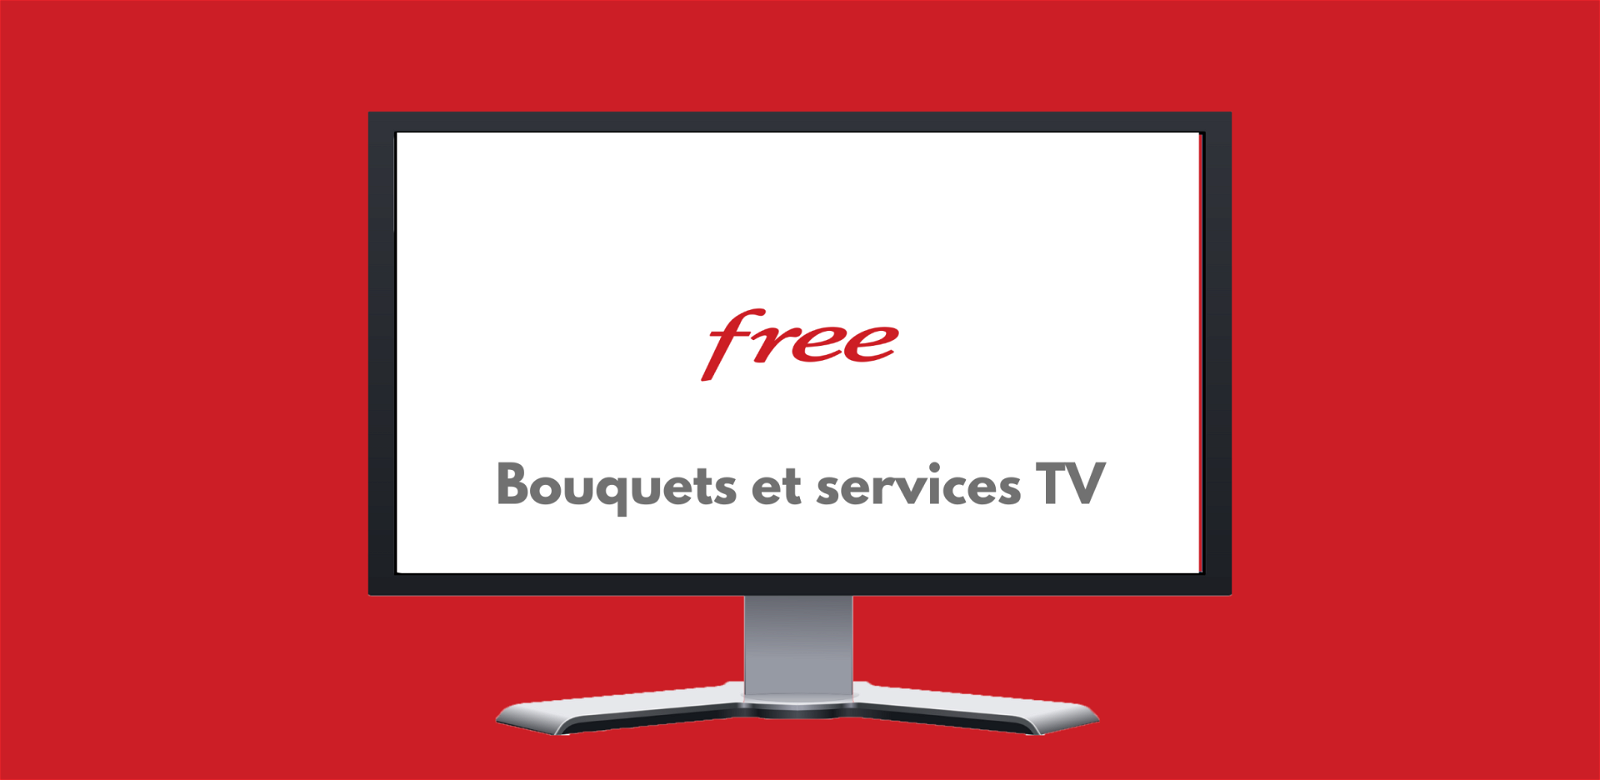 Free TV : chaines, bouquets et service TV